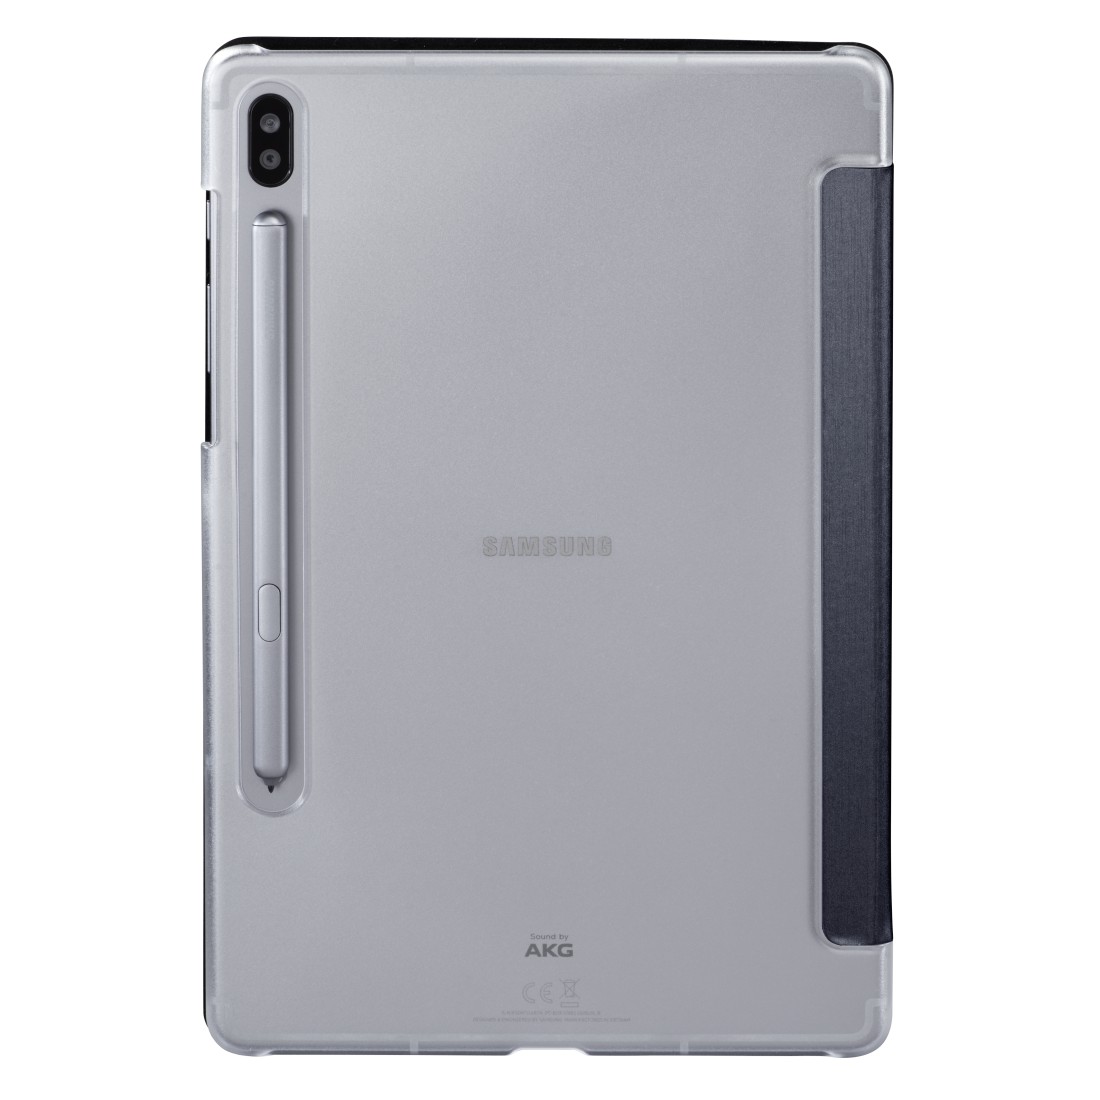 Samsung Tablet Helligkeit Lässt Sich Nicht Einstellen